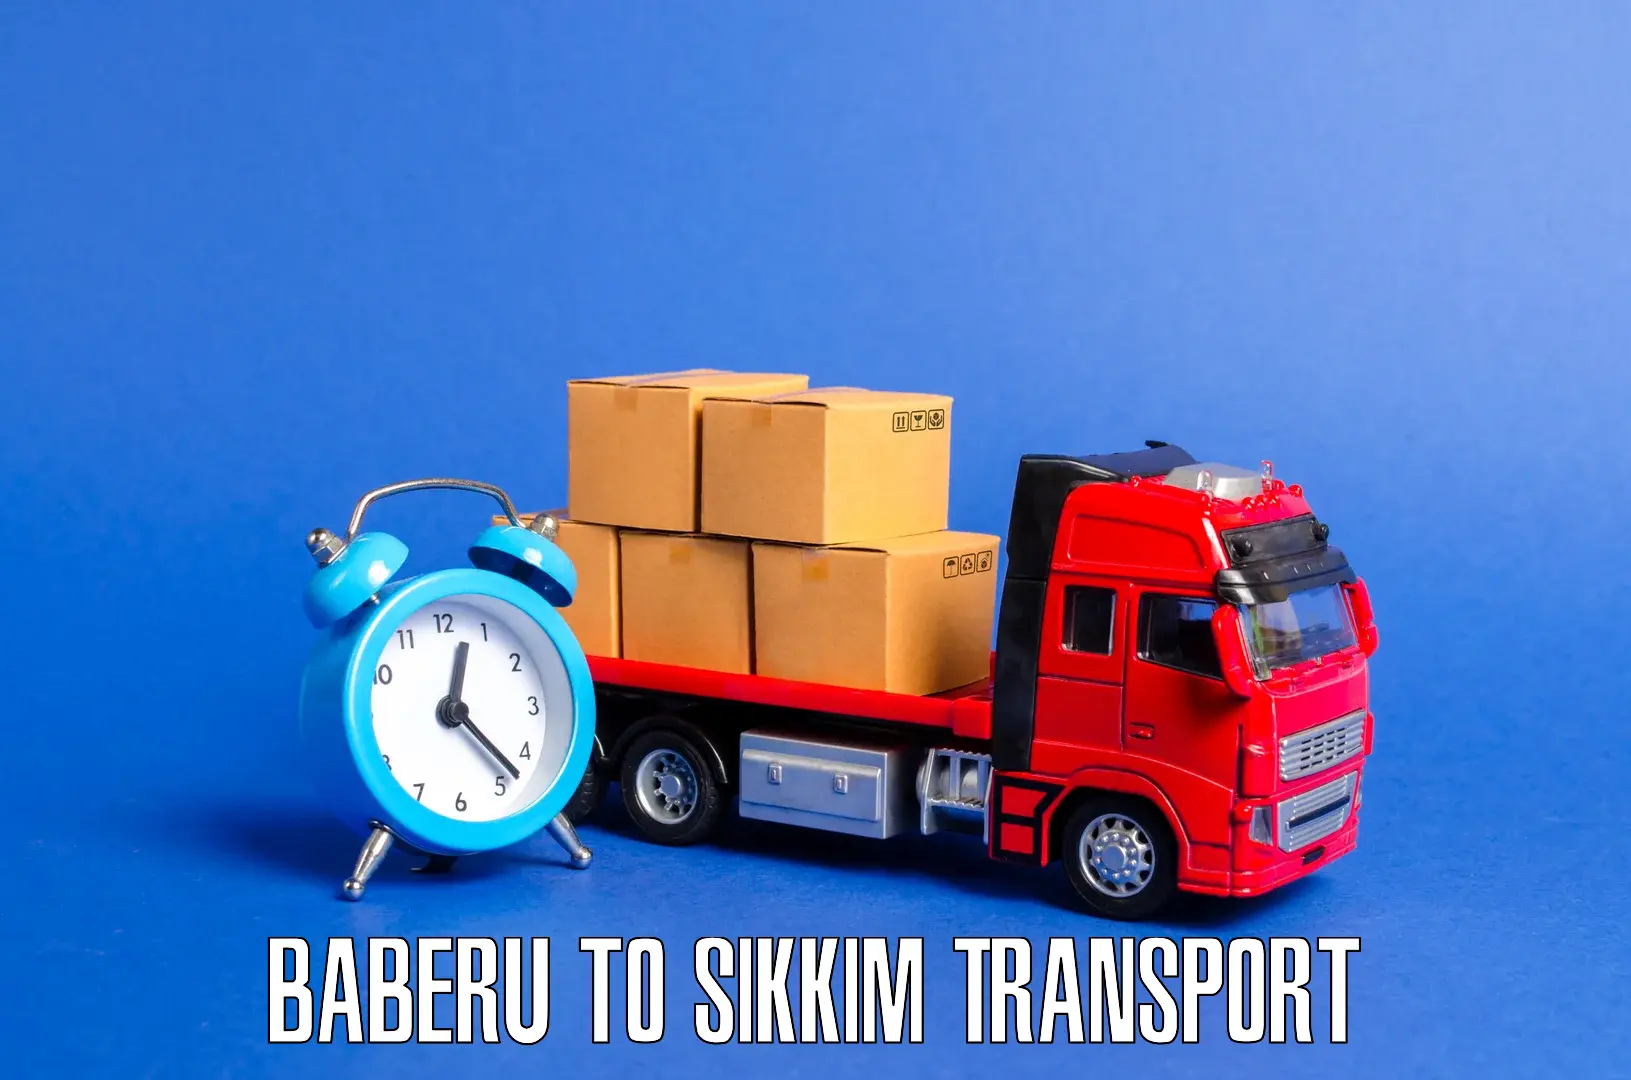 Land transport services Baberu to North Sikkim